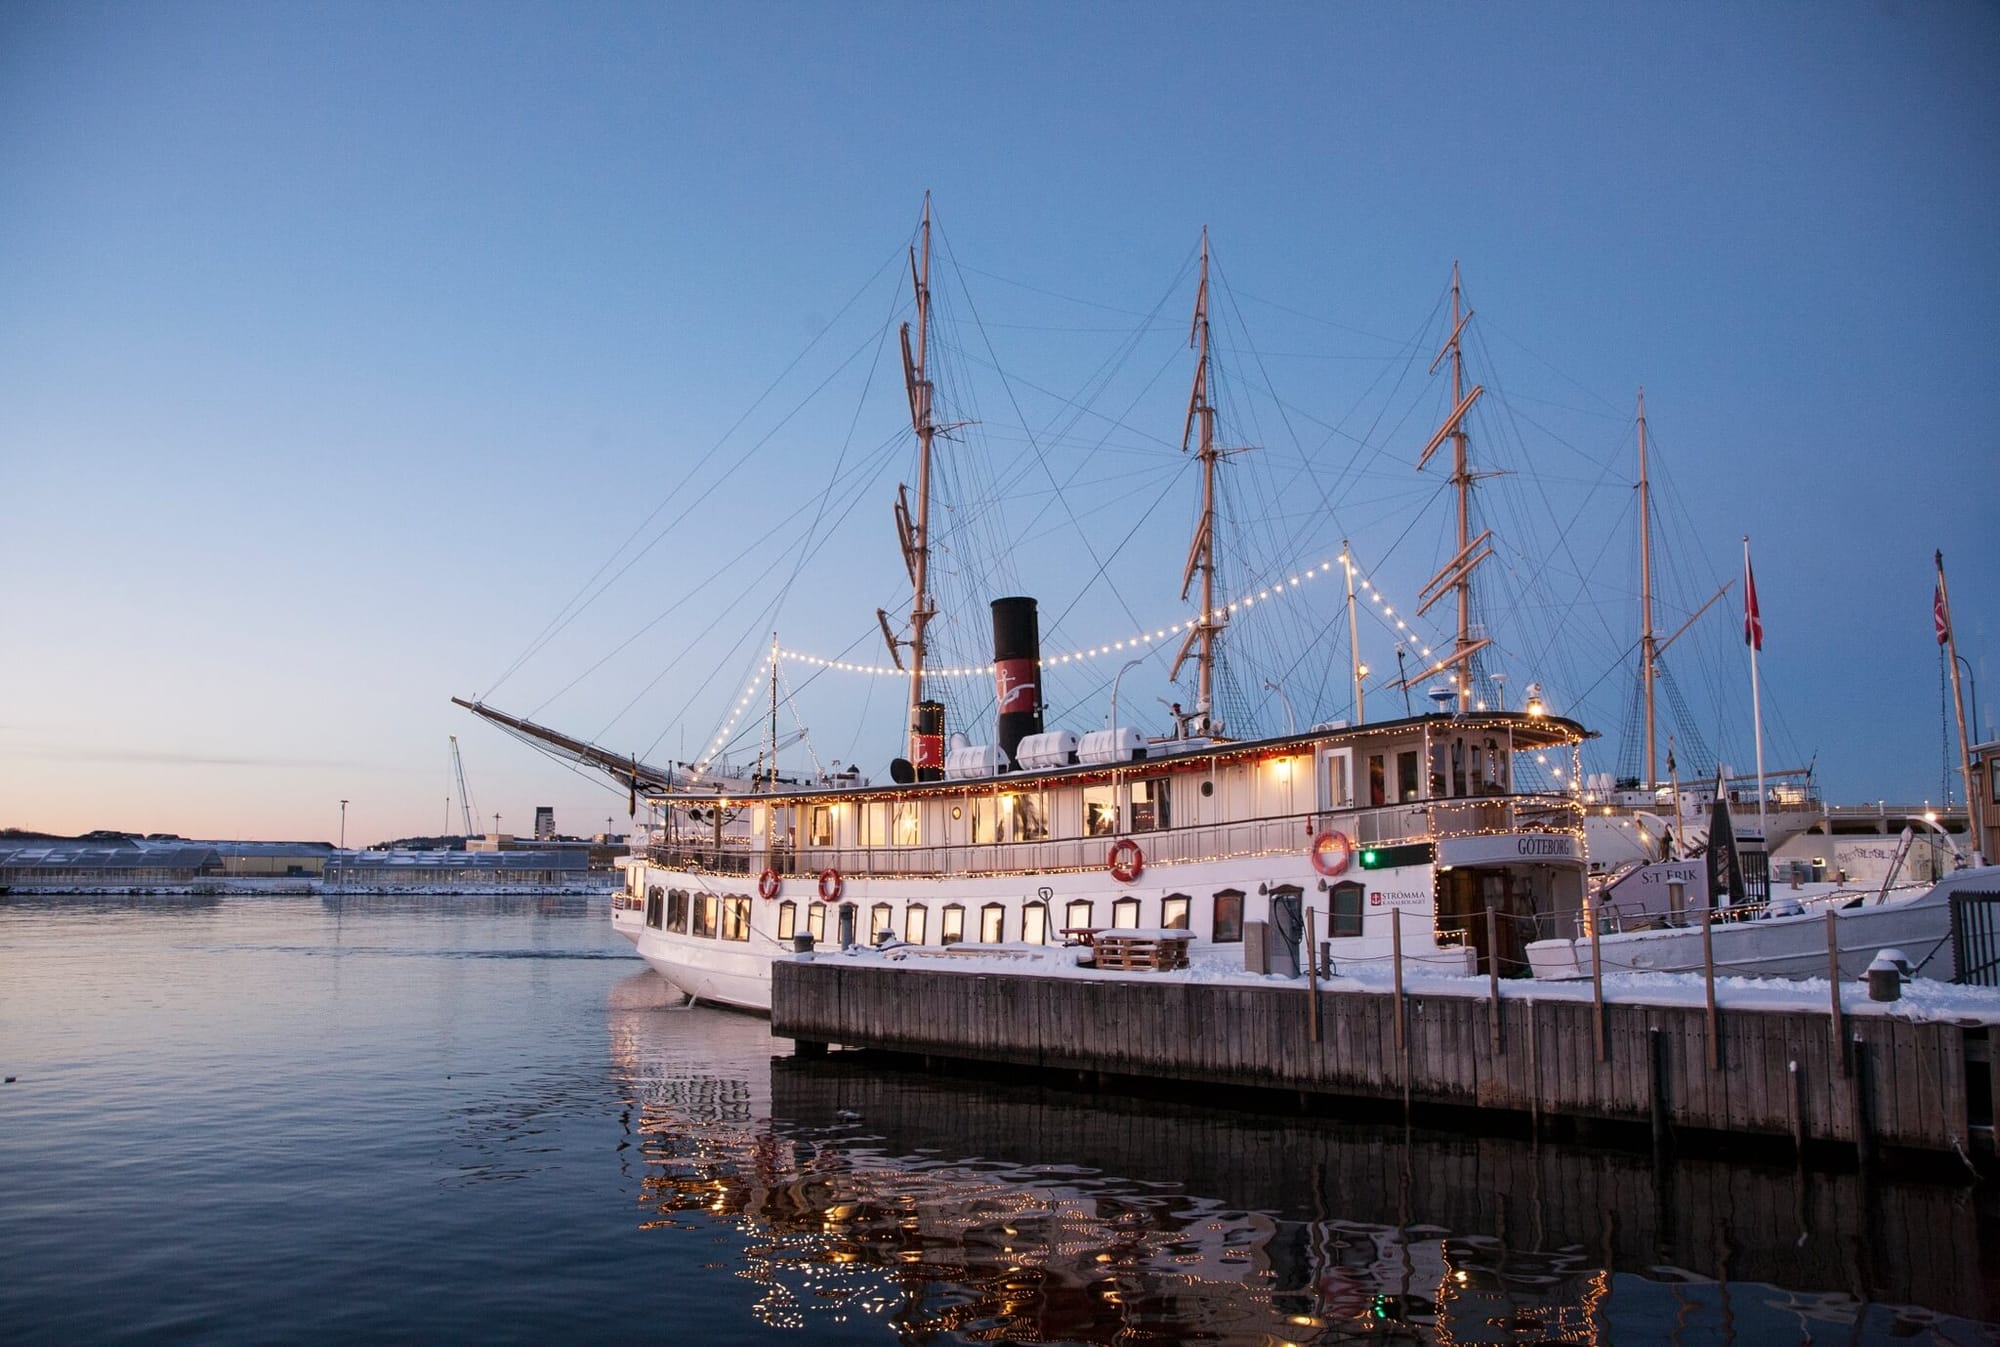 Hyr M/S Göteborg och upplev den känslan av att ha en egen båt för en dag